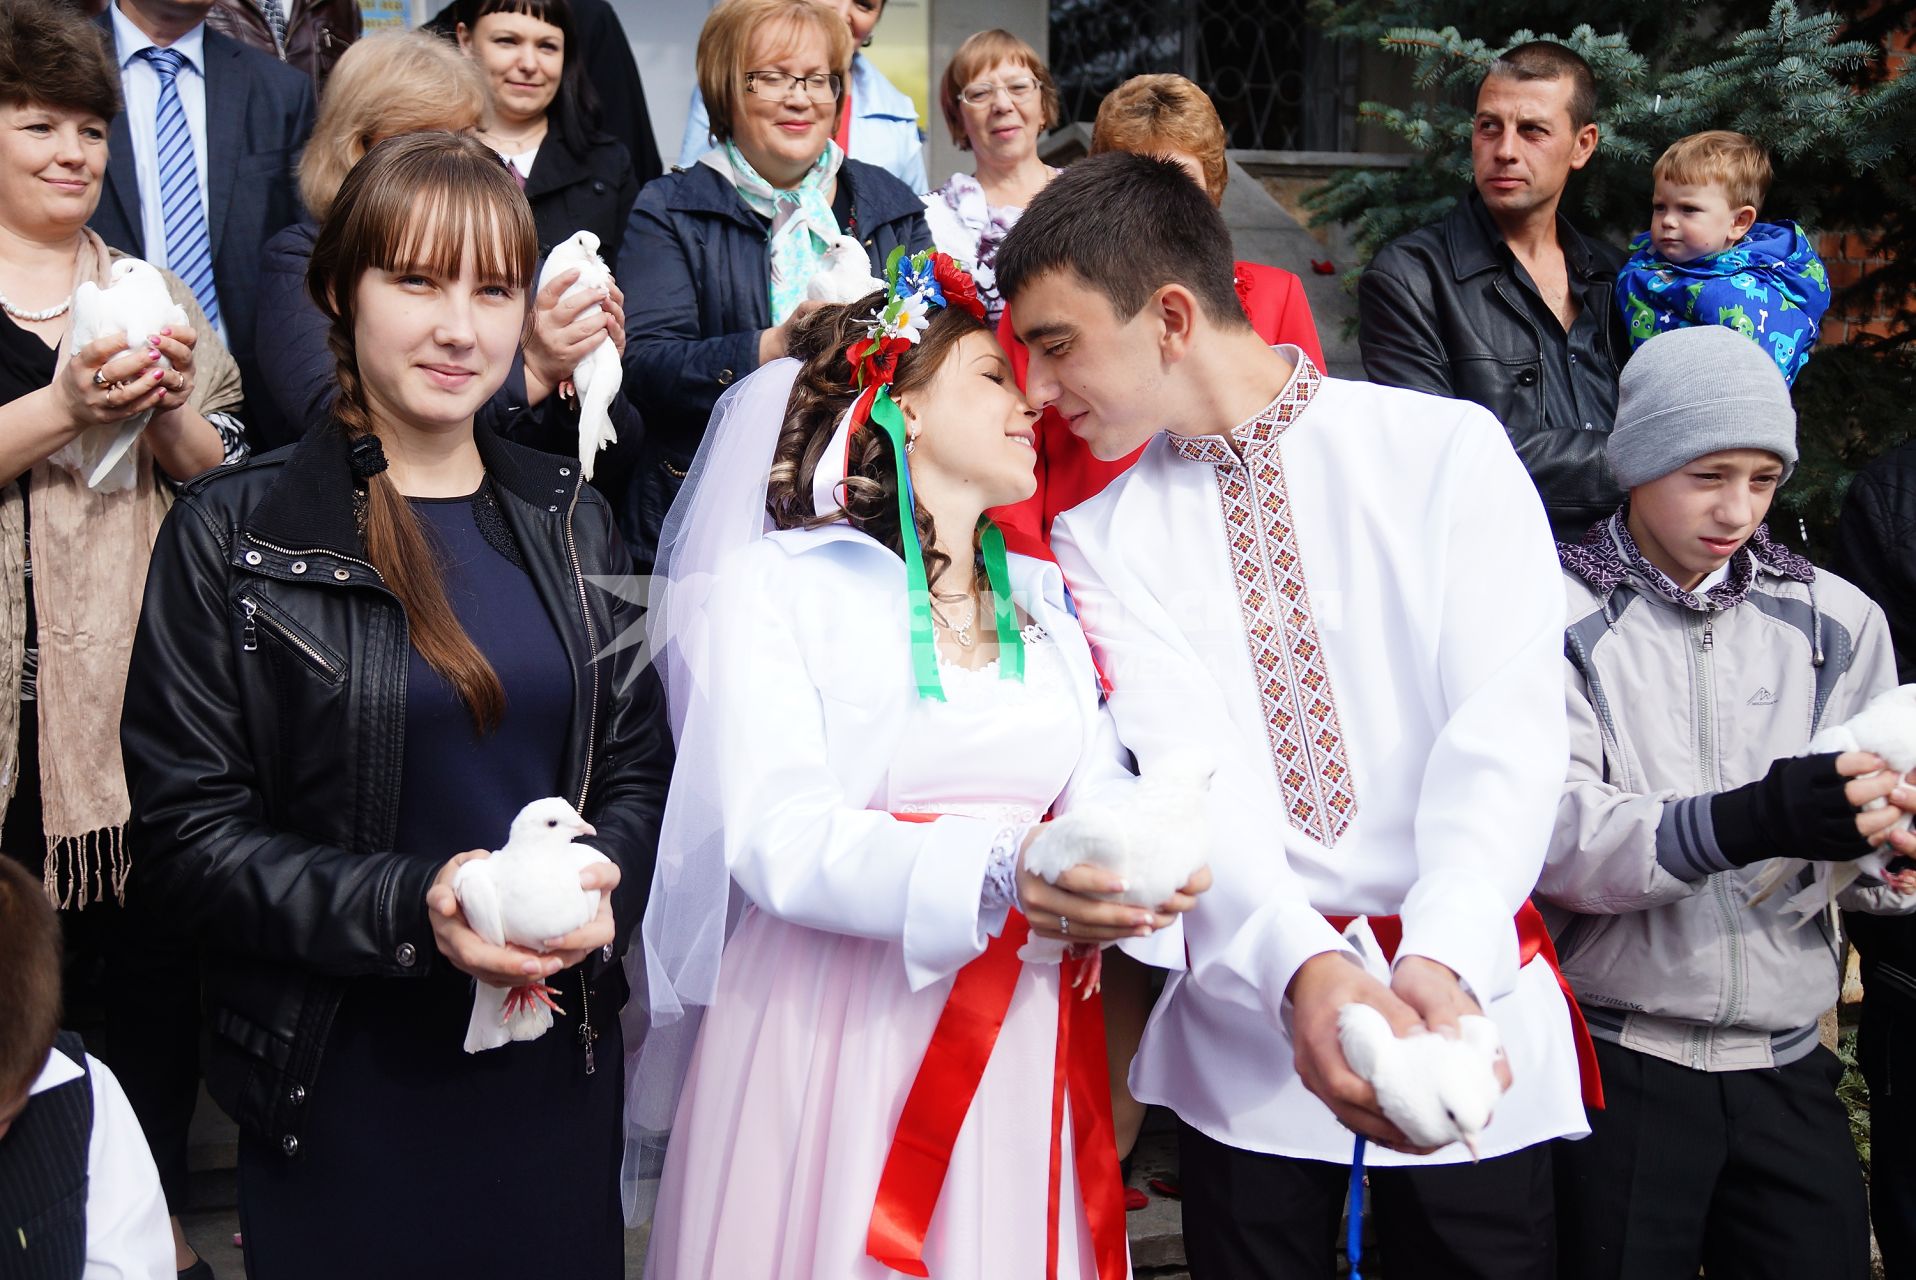 свадьба беженцев из Украины Геннадий и Яна Прудниковы в городе Реж Свердловской области